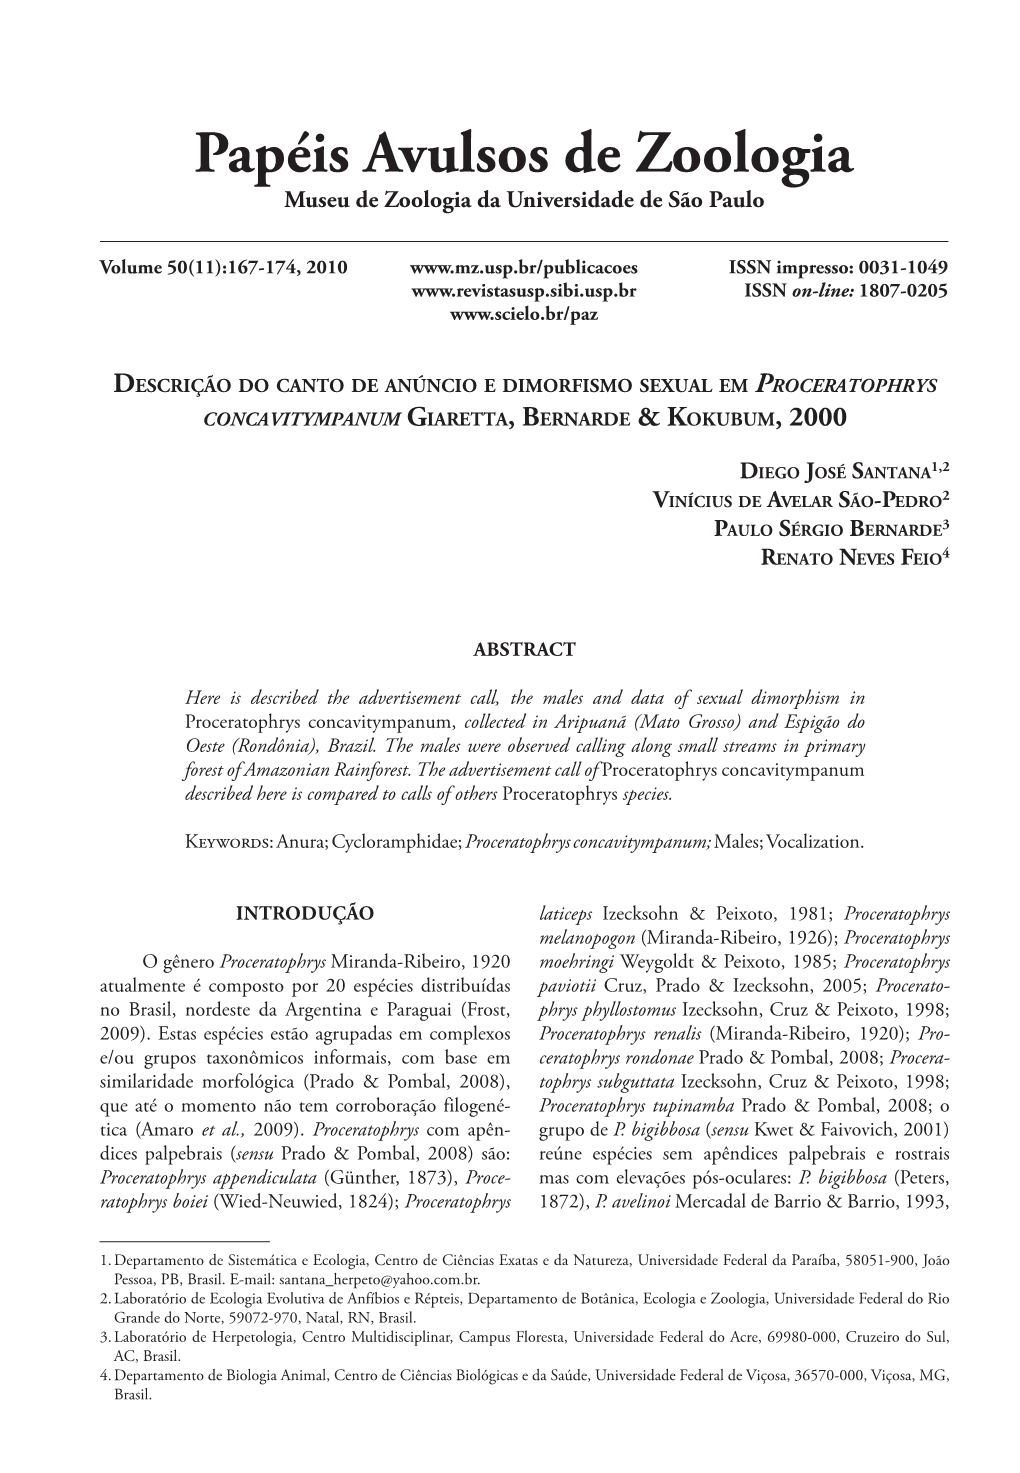 Descrição Do Canto De Anúncio E Dimorfismo Sexual Em Proceratophrys Concavitympanum Giaretta, Bernarde & Kokubum, 2000